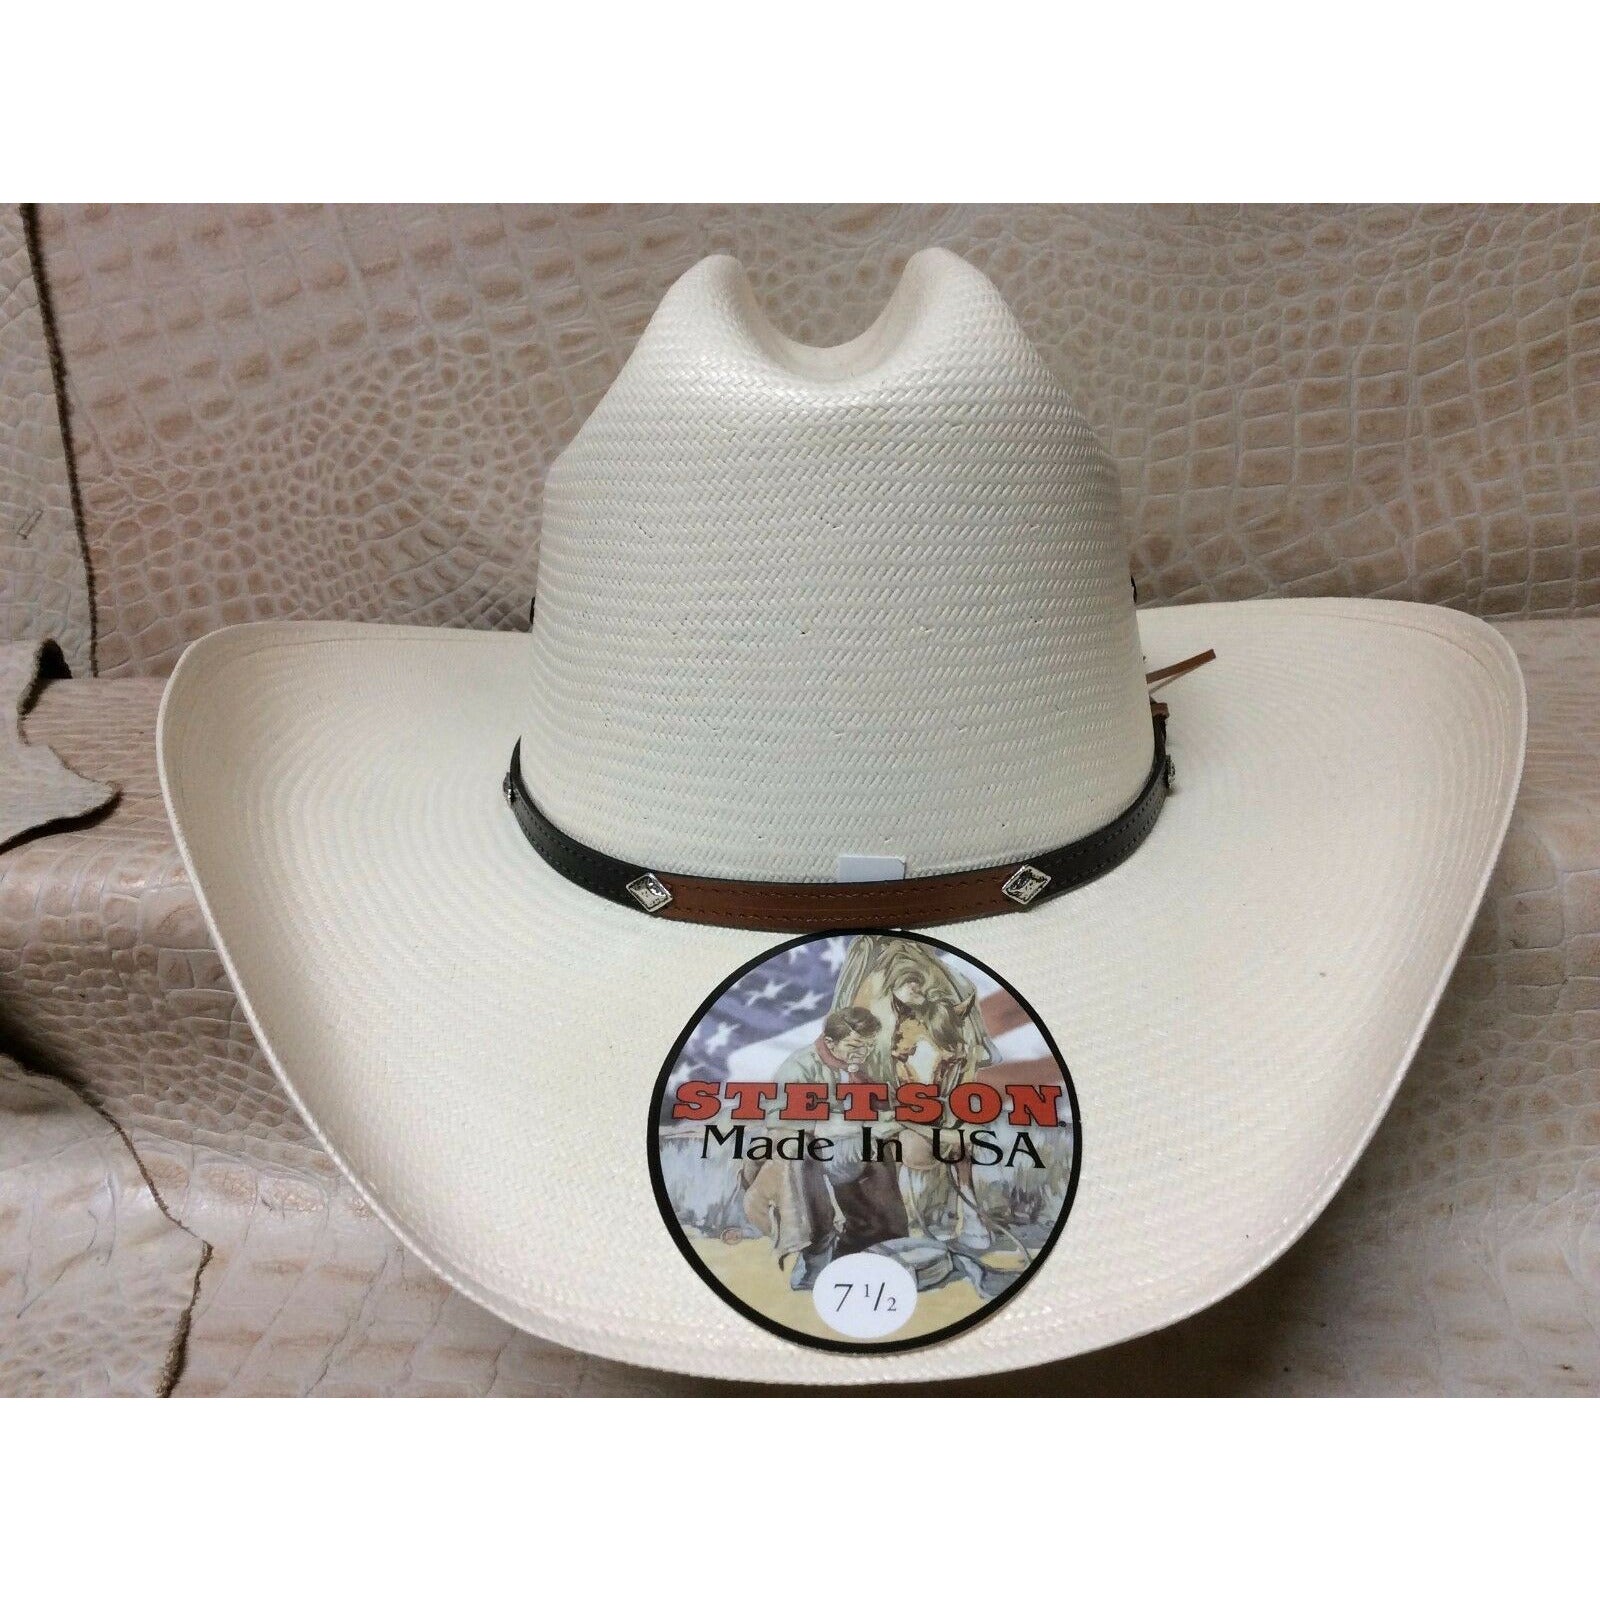 Stetson 10x Grant Western Classic Cowboy Straw Hat - CWesternwear